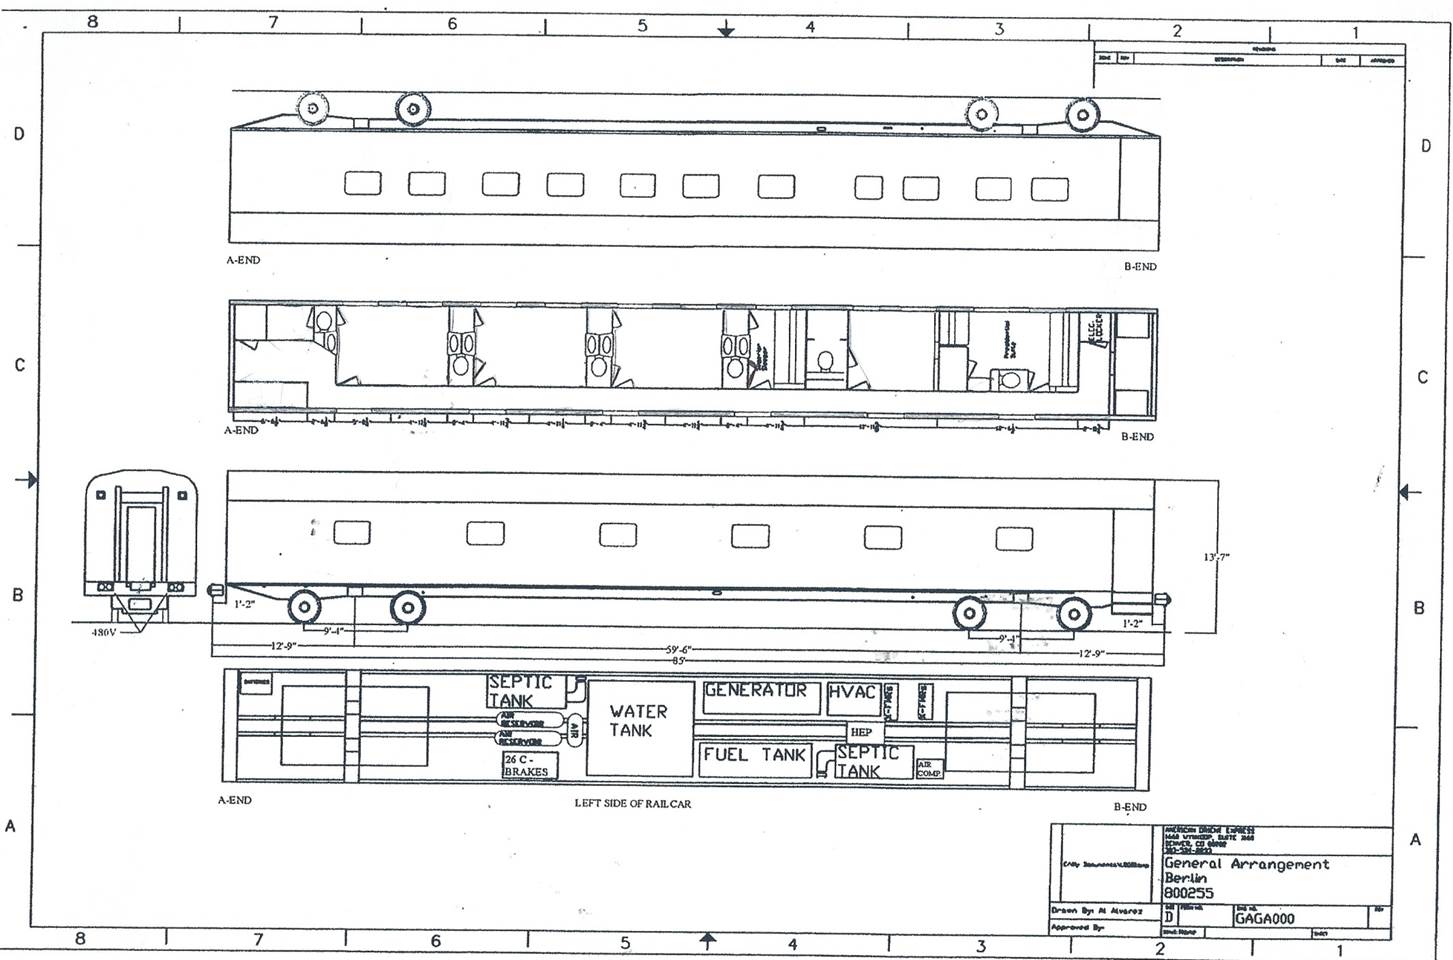 Train car diagram